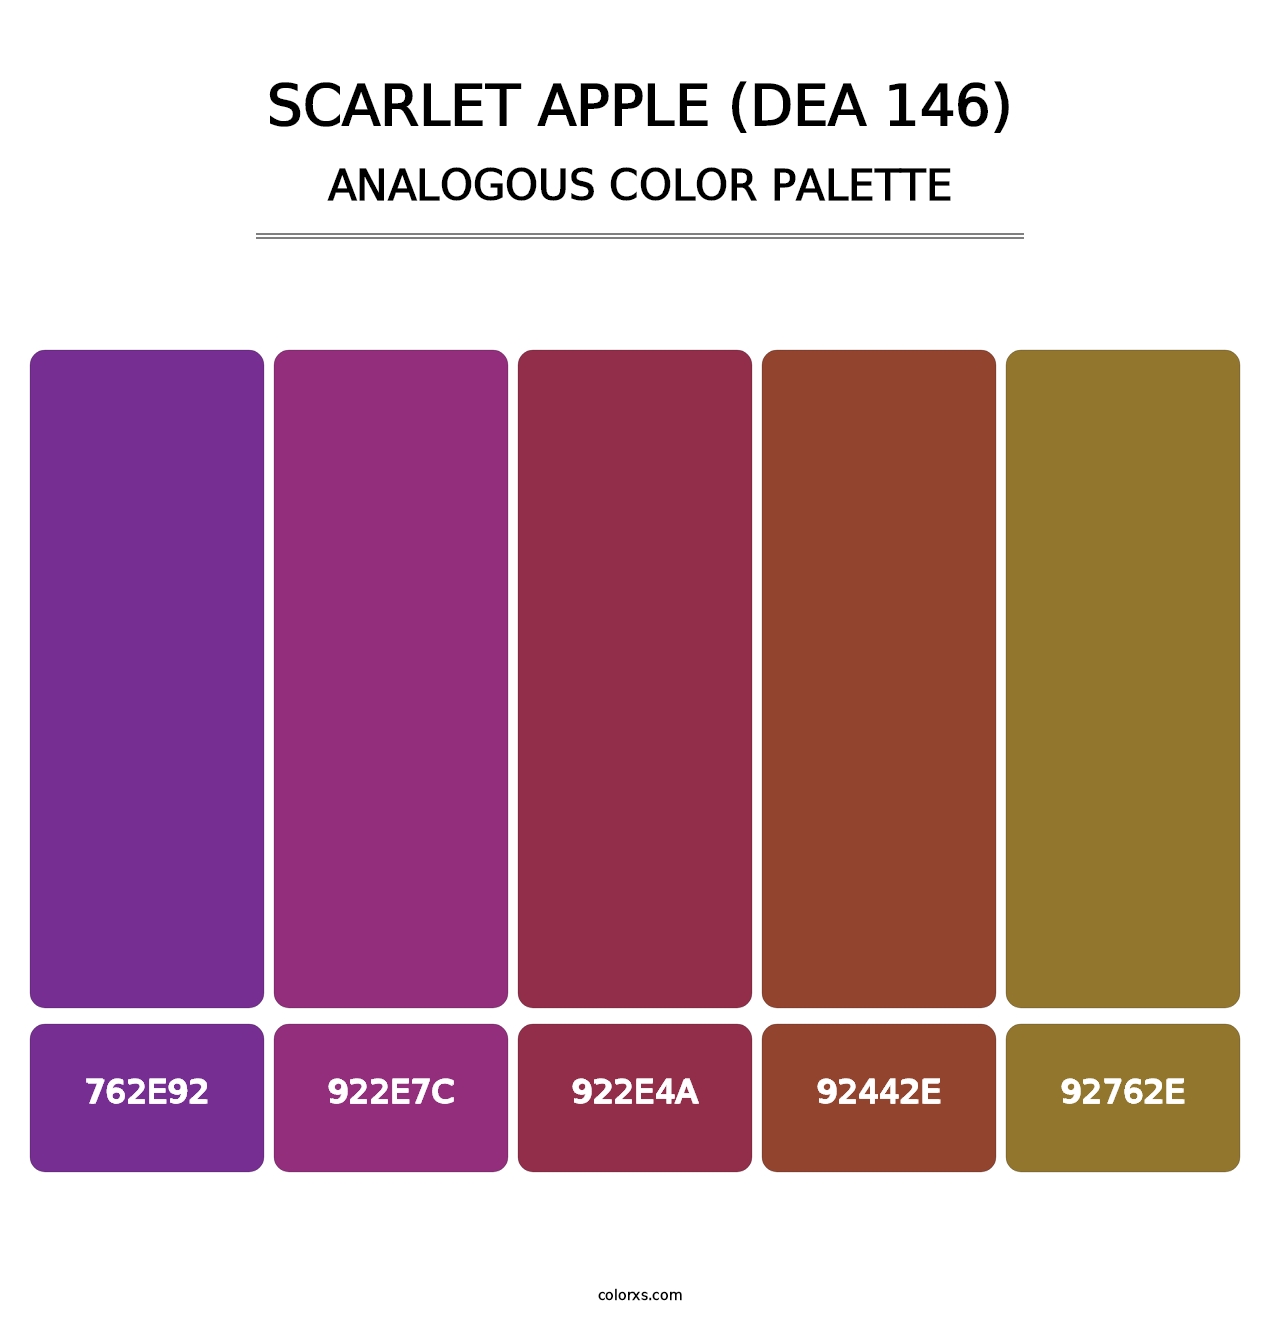 Scarlet Apple (DEA 146) - Analogous Color Palette